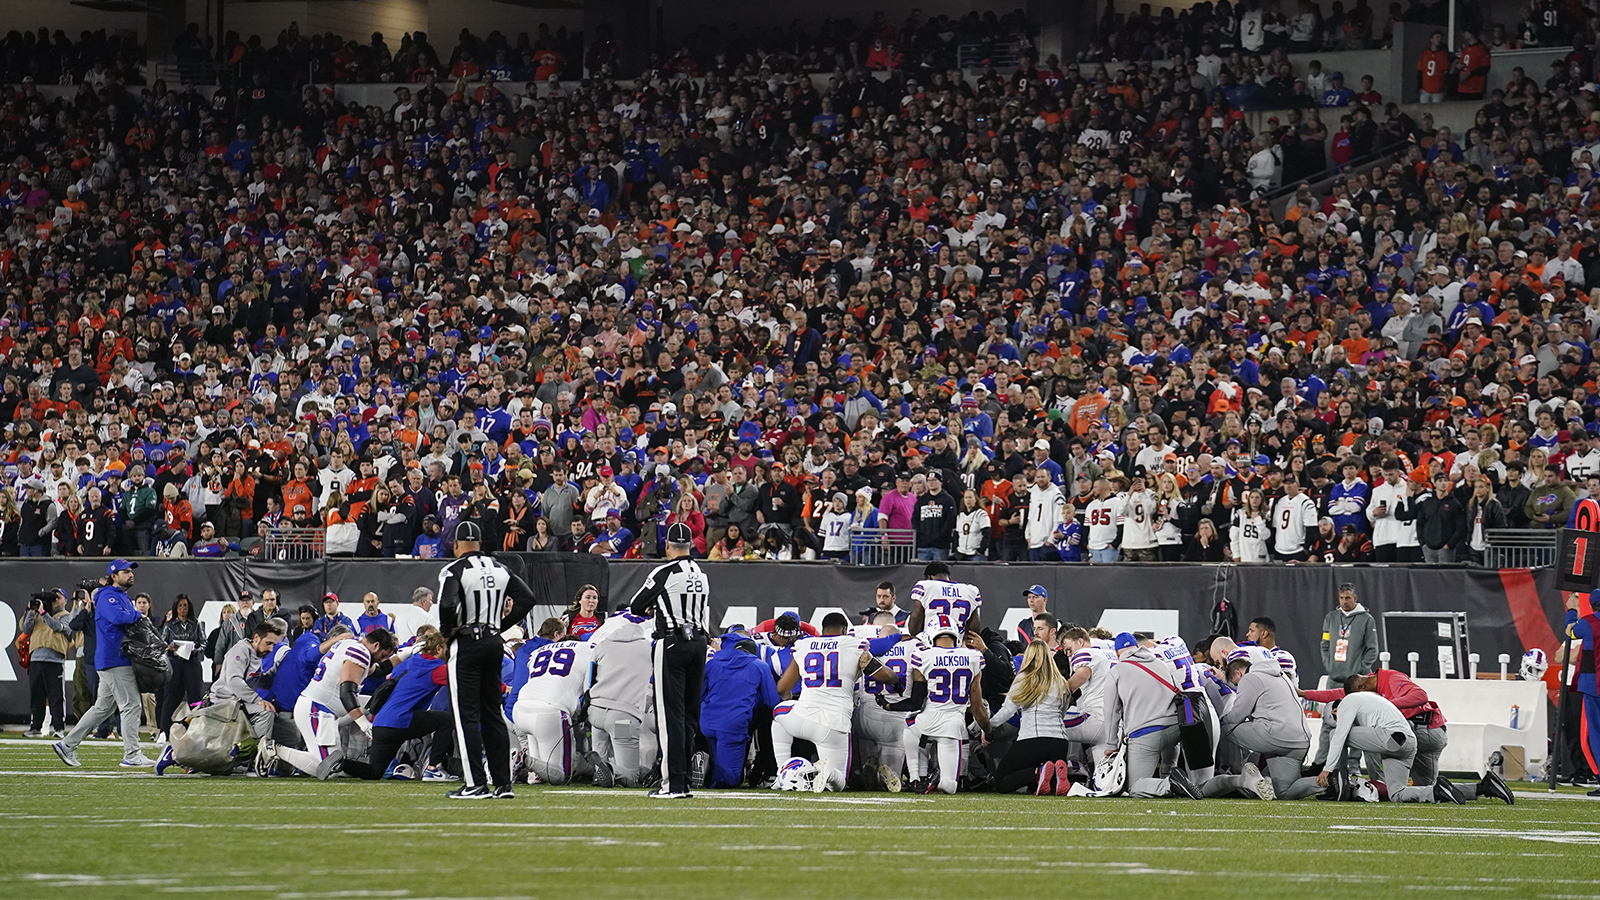 football players kneel in prayer on the field in Cincinnati